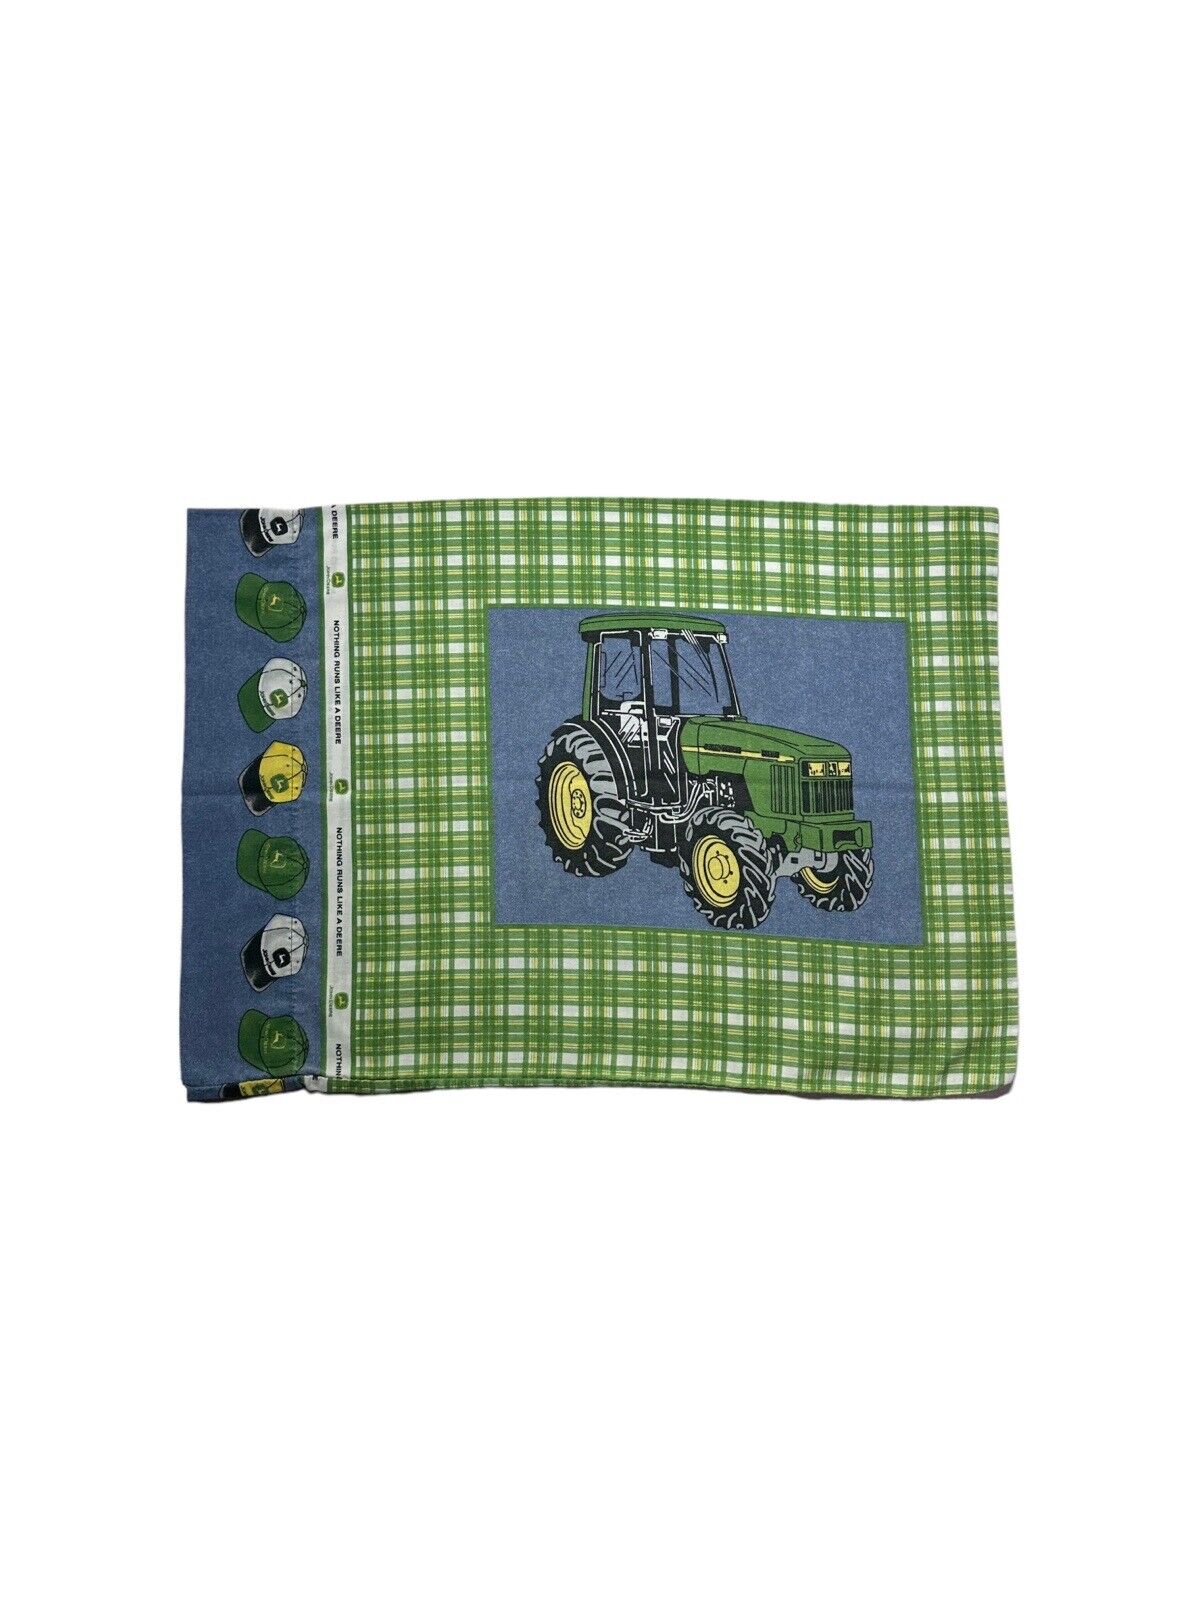 Vintage John Deere Tractor Pillow Case Farmer Farm Standard Pillow Green USA